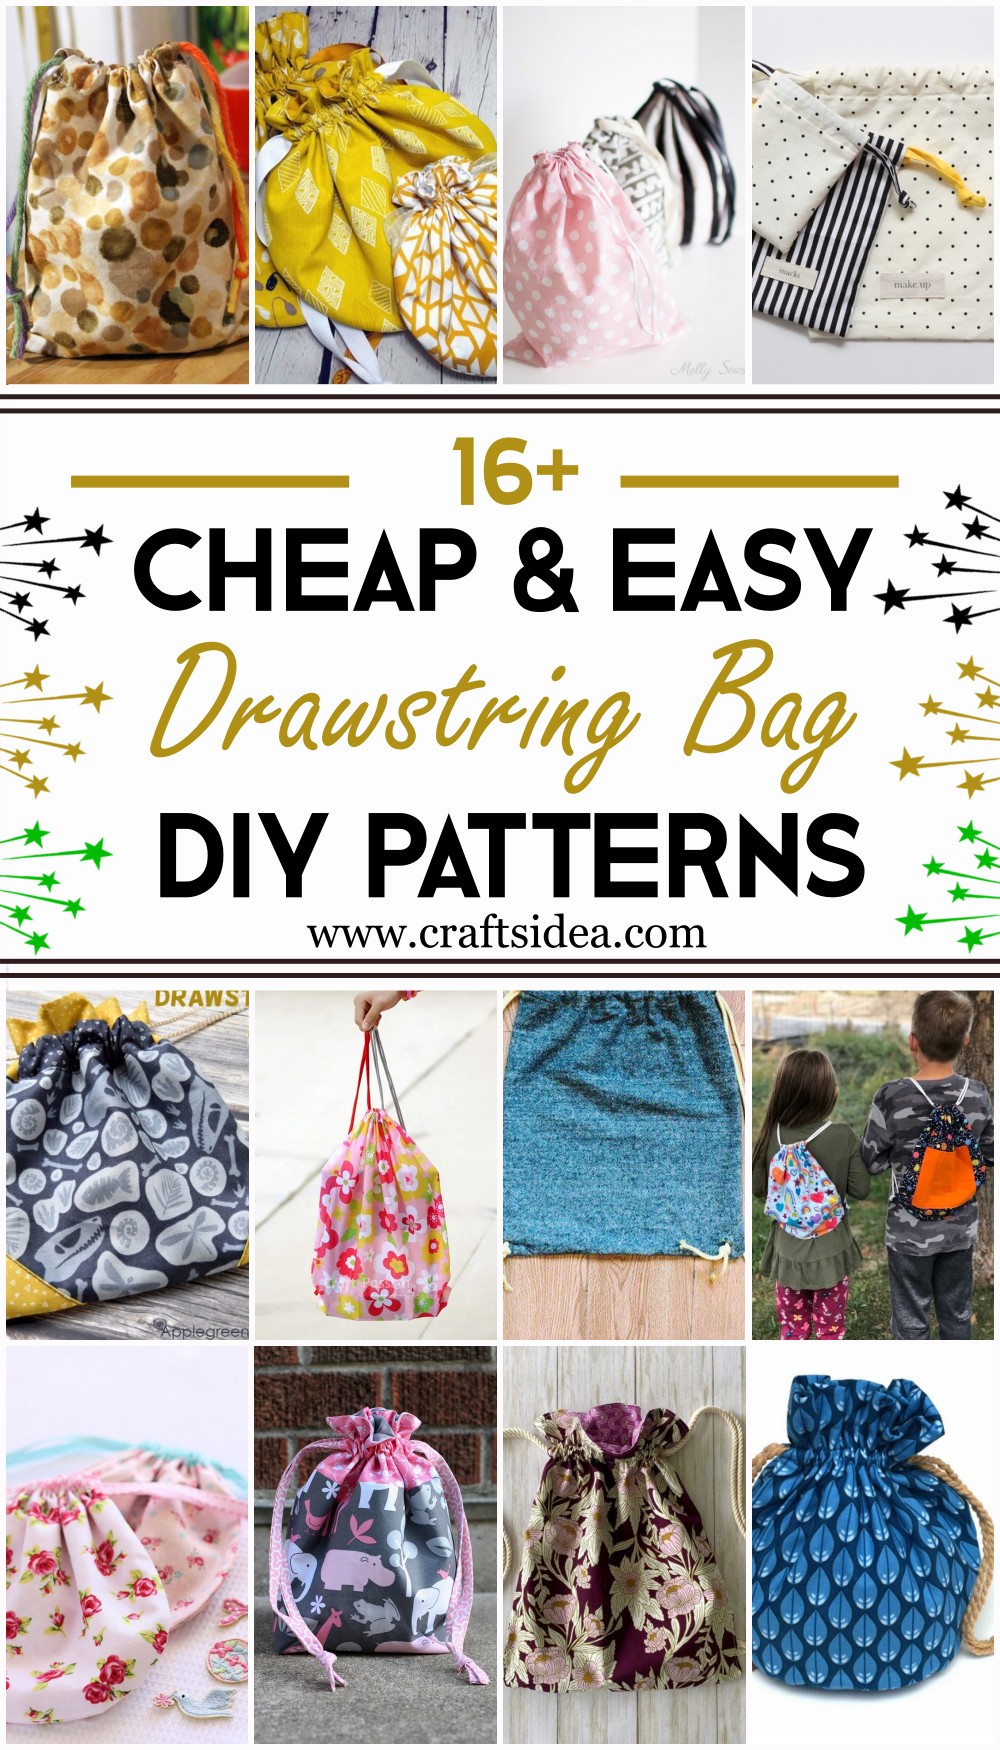 DIY Drawstring Bag Patterns